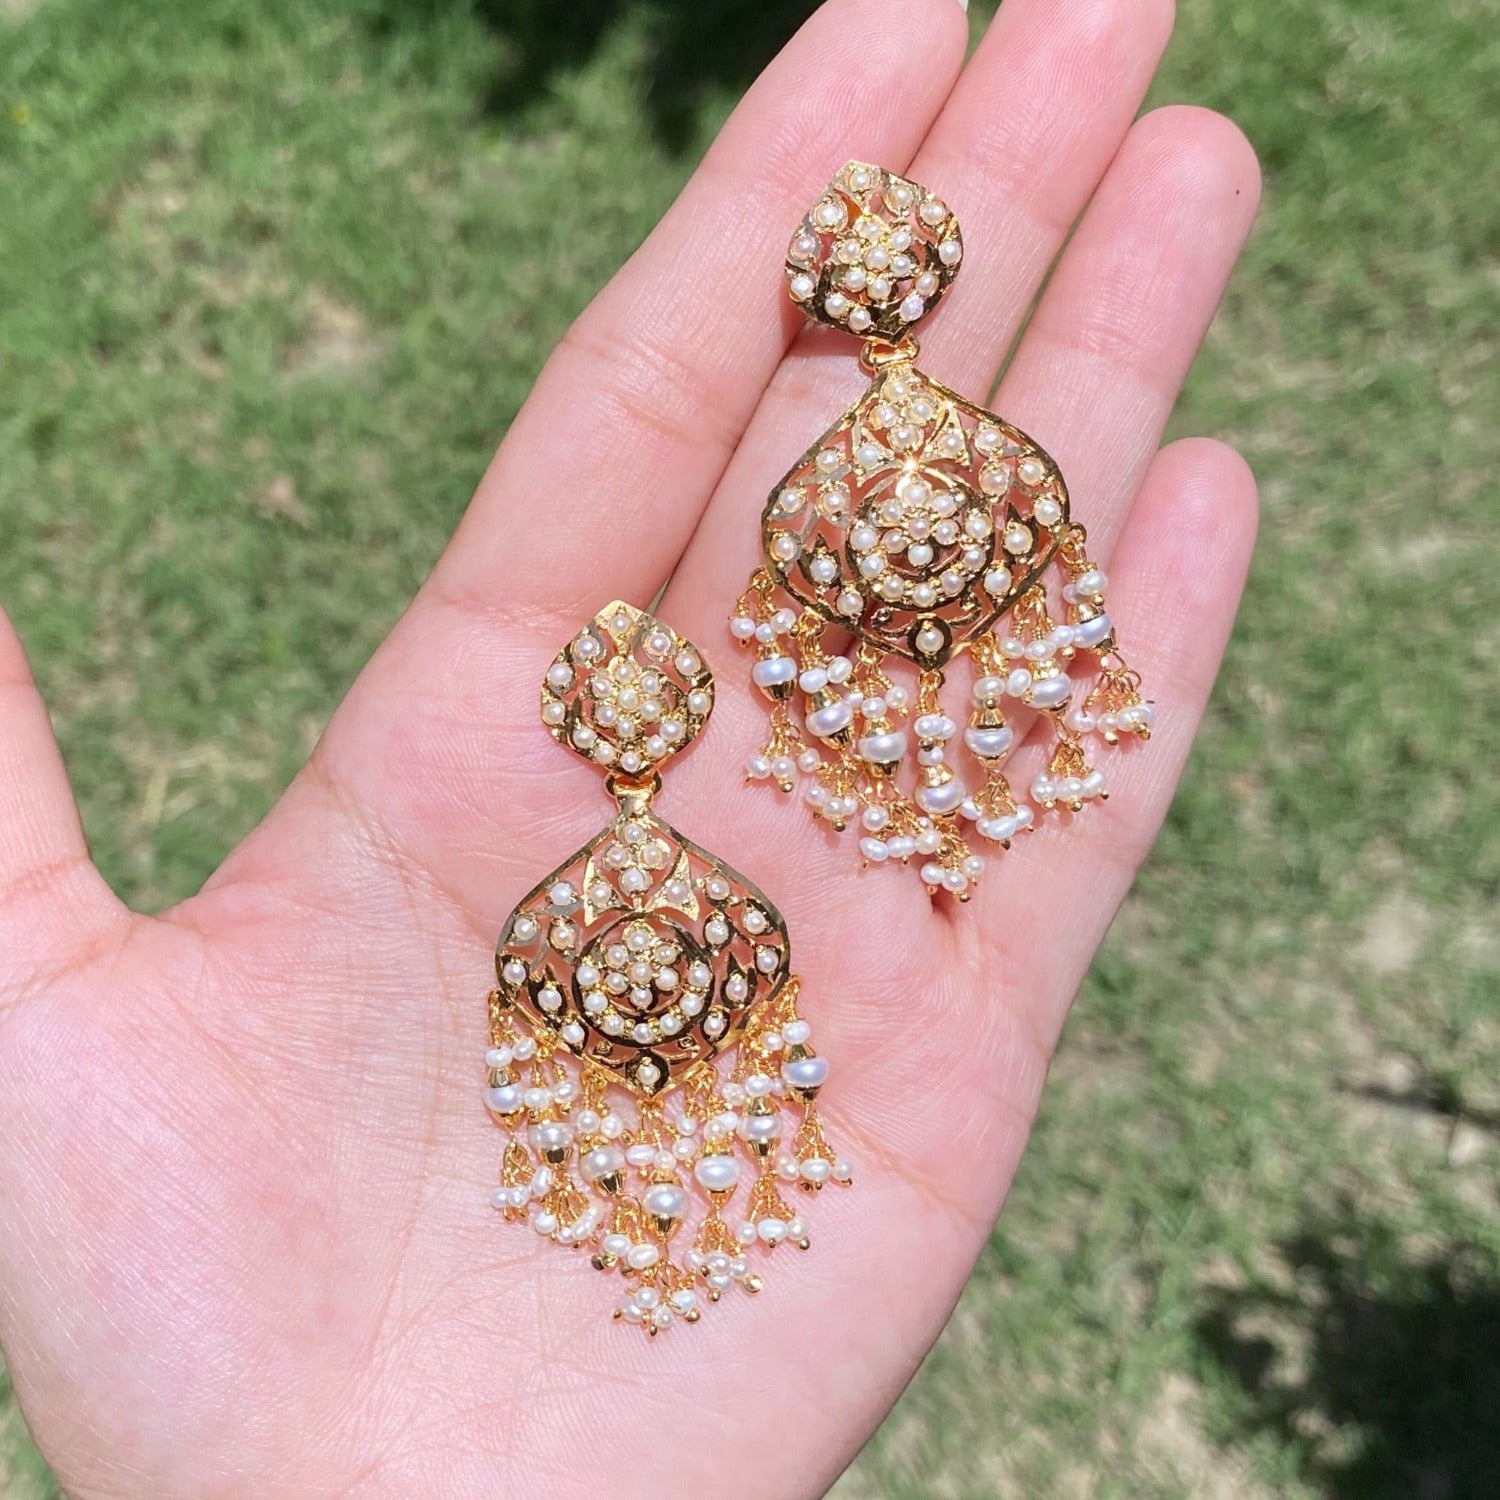 elegant pearl earrings